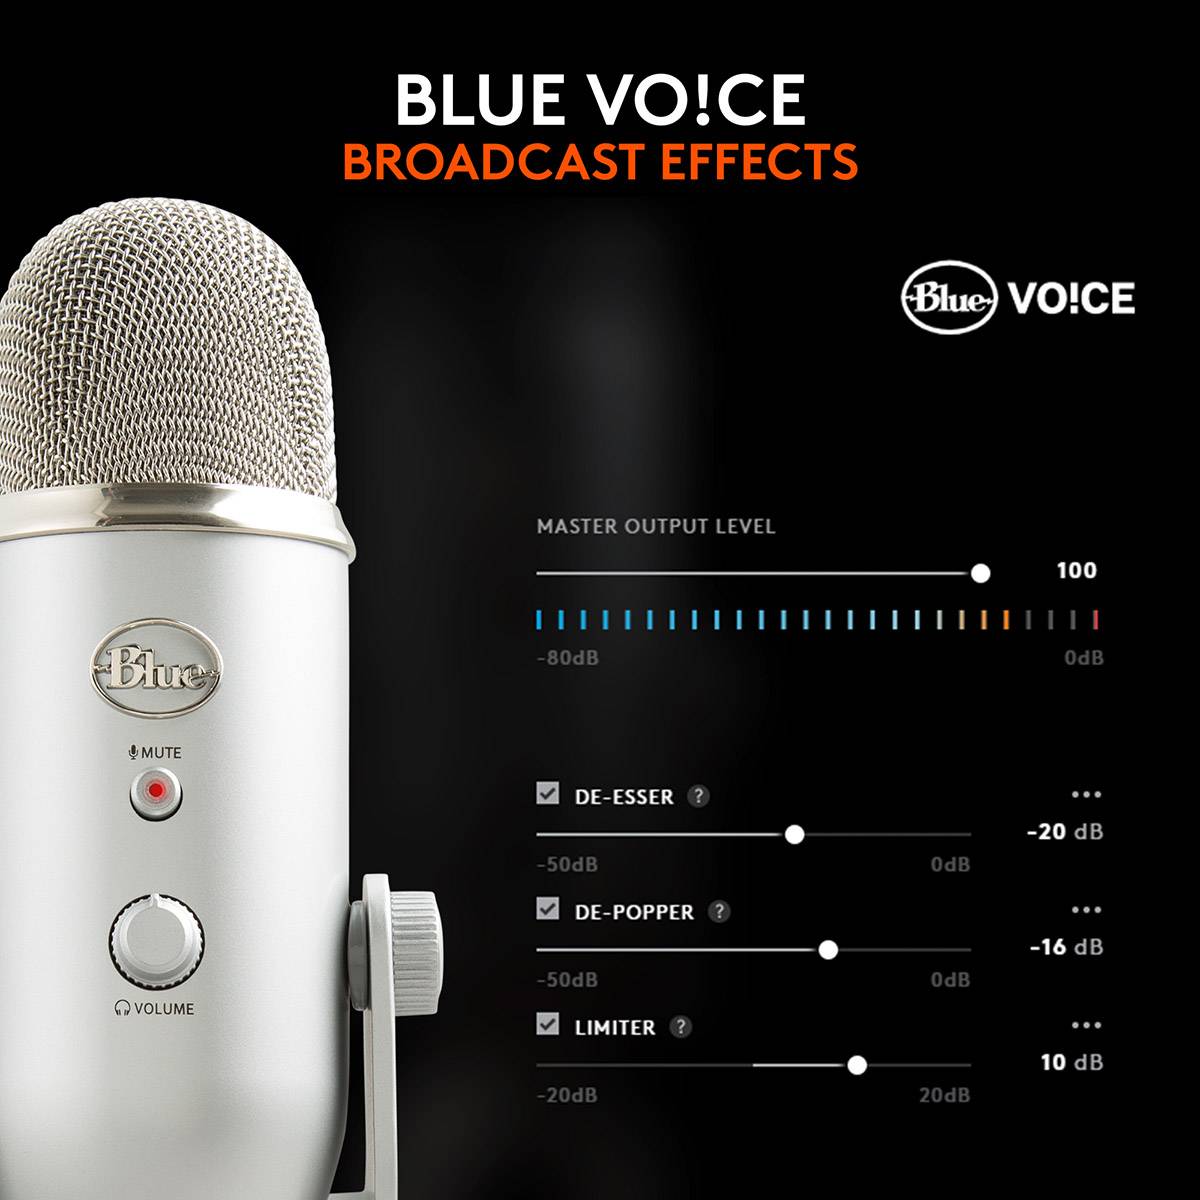 Microfone Logitech for Creators Blue Yeti USB Condensador PC/Mac Silver